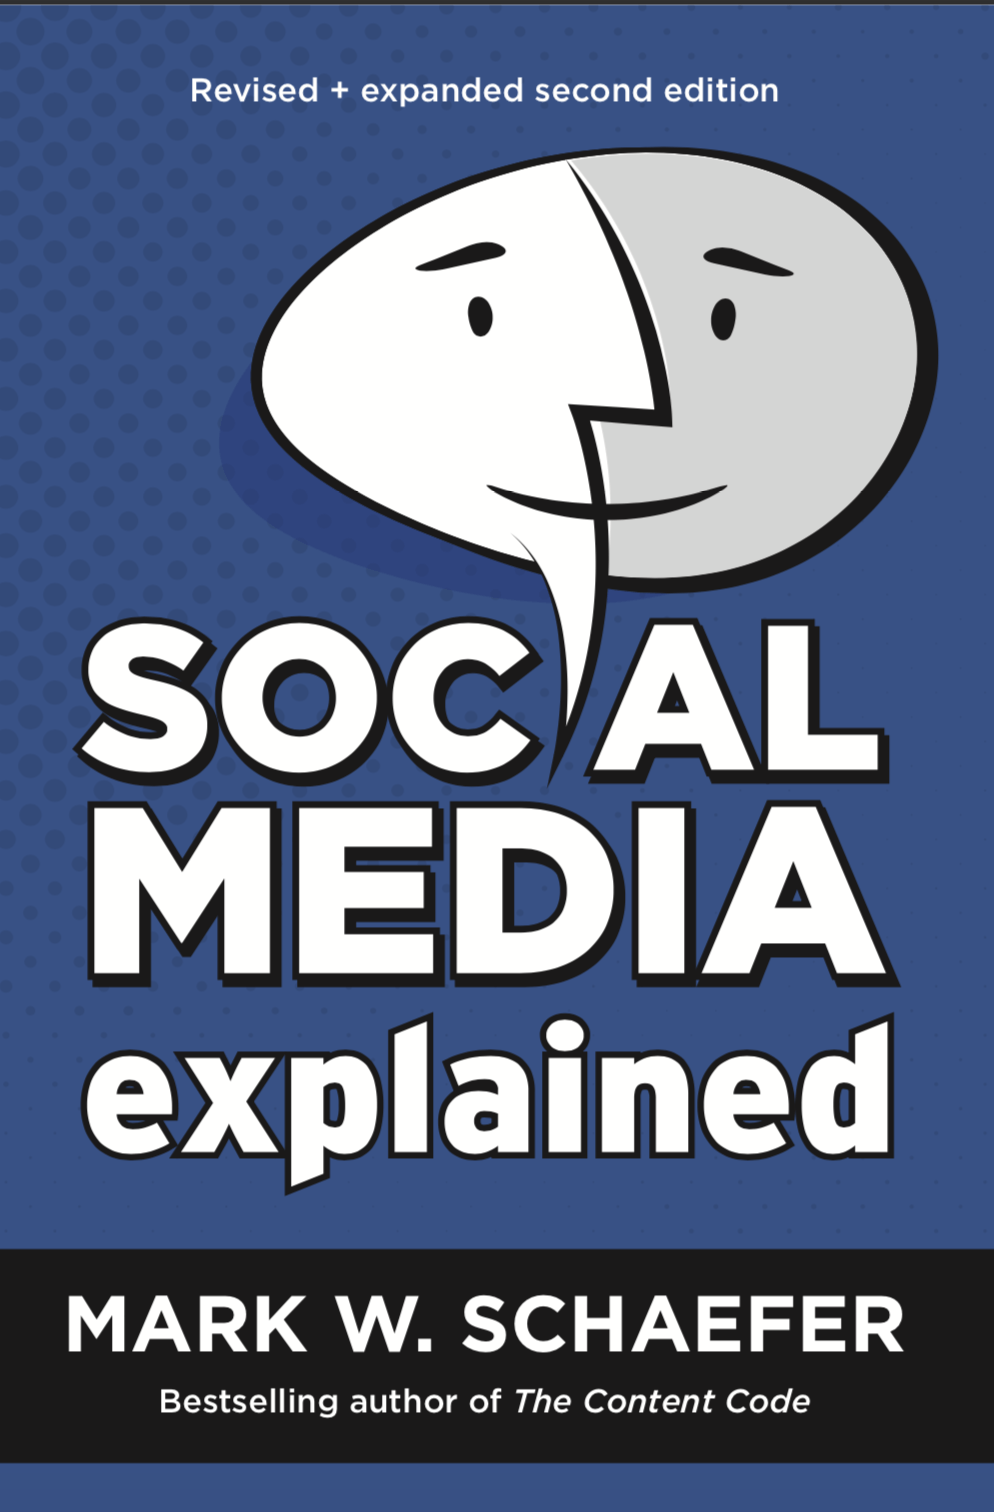 social media explained